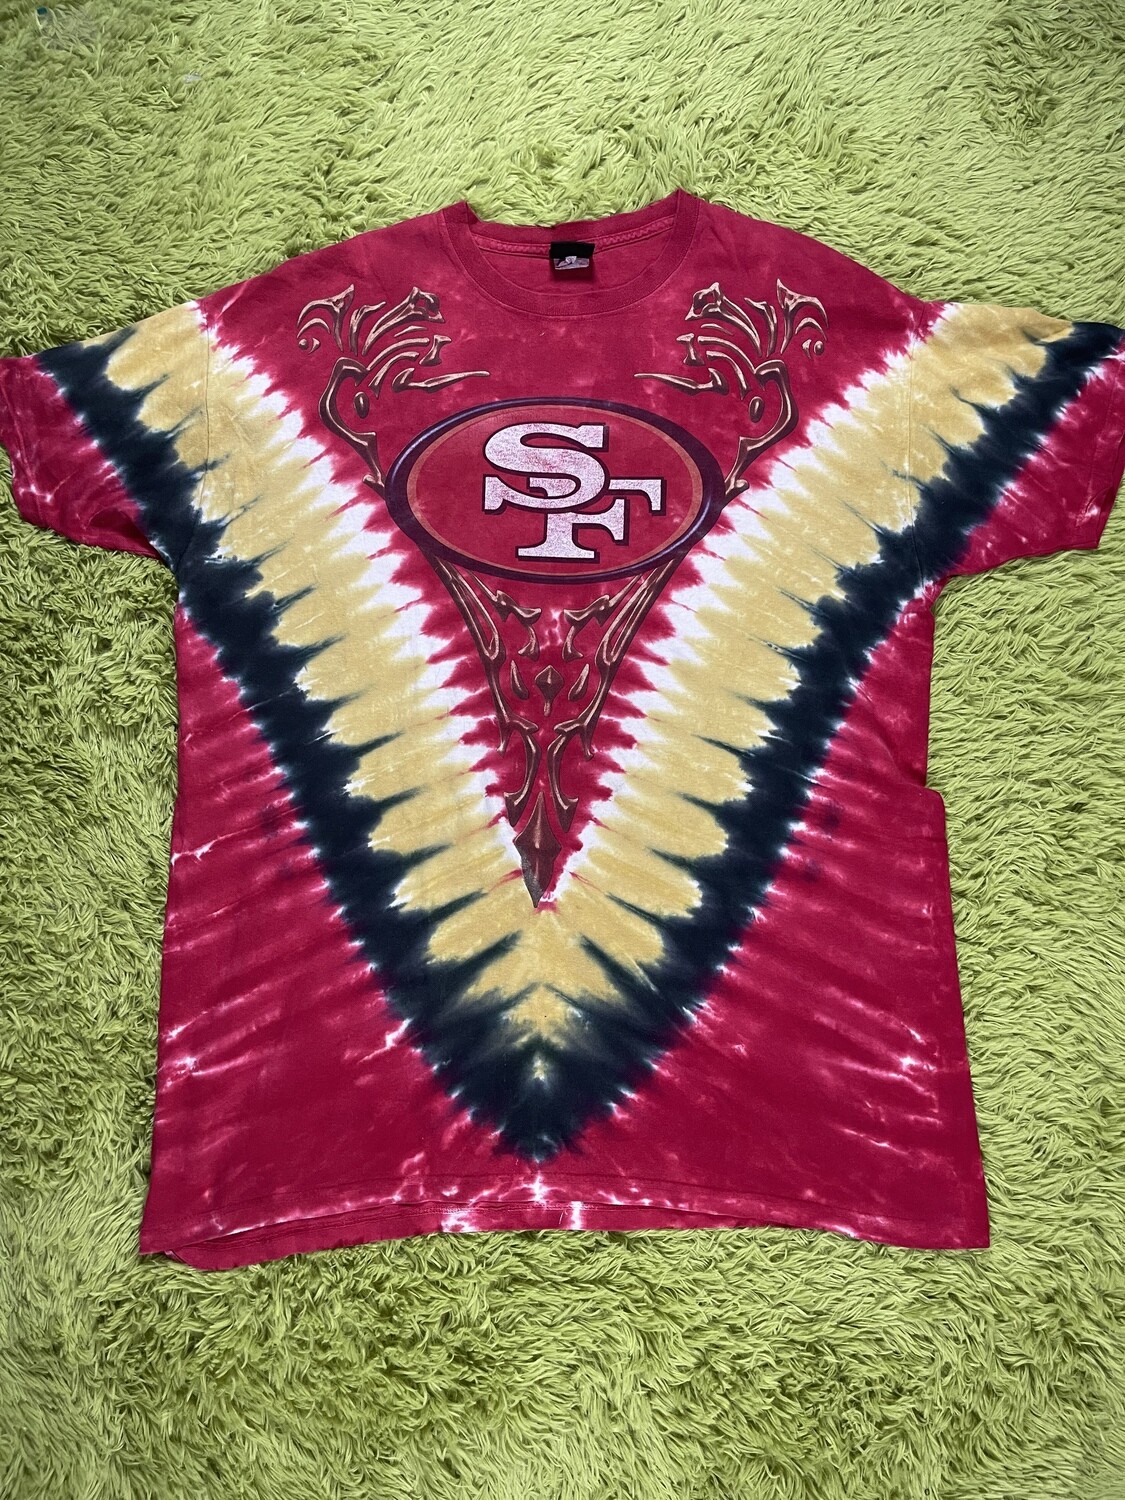 tie dye 49ers shirt